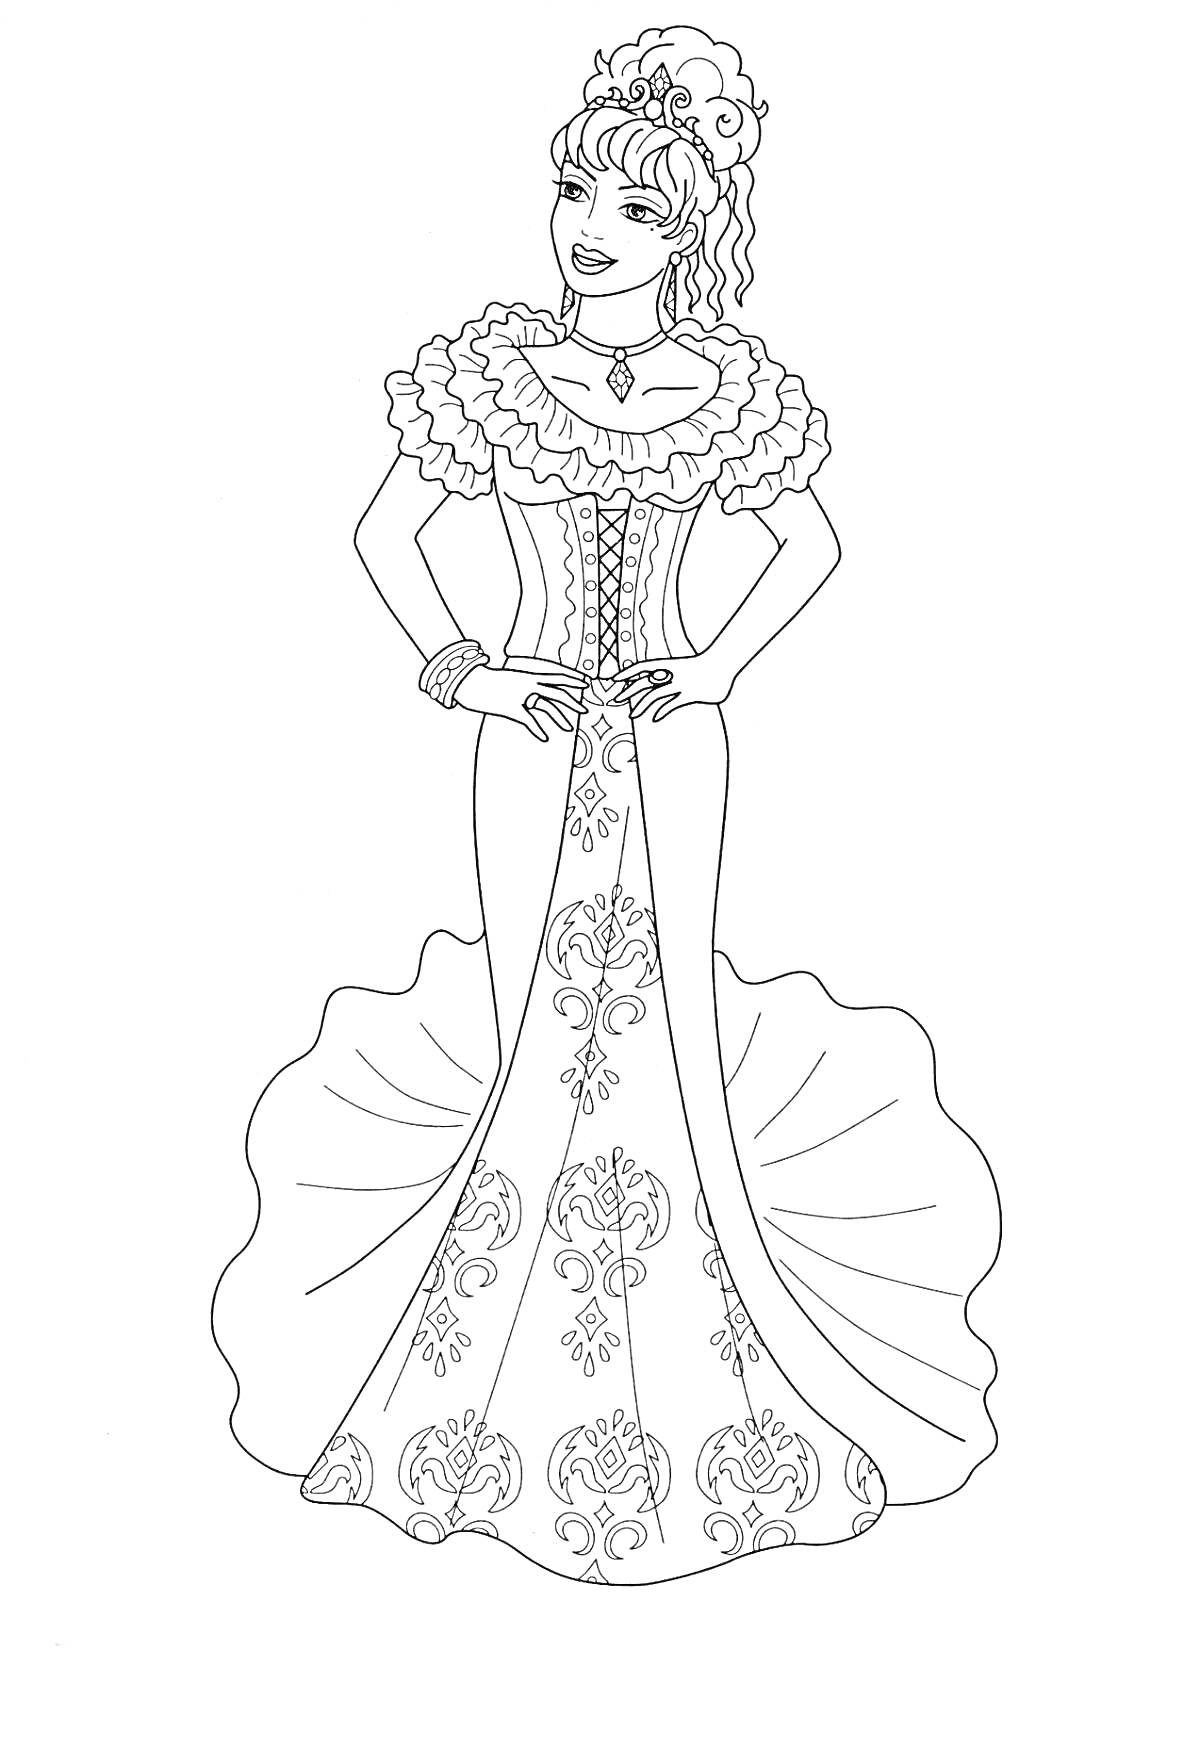 Раскраска Принцесса с короной в пышном платье с узорами, ожерельем и браслетом, руки на талии